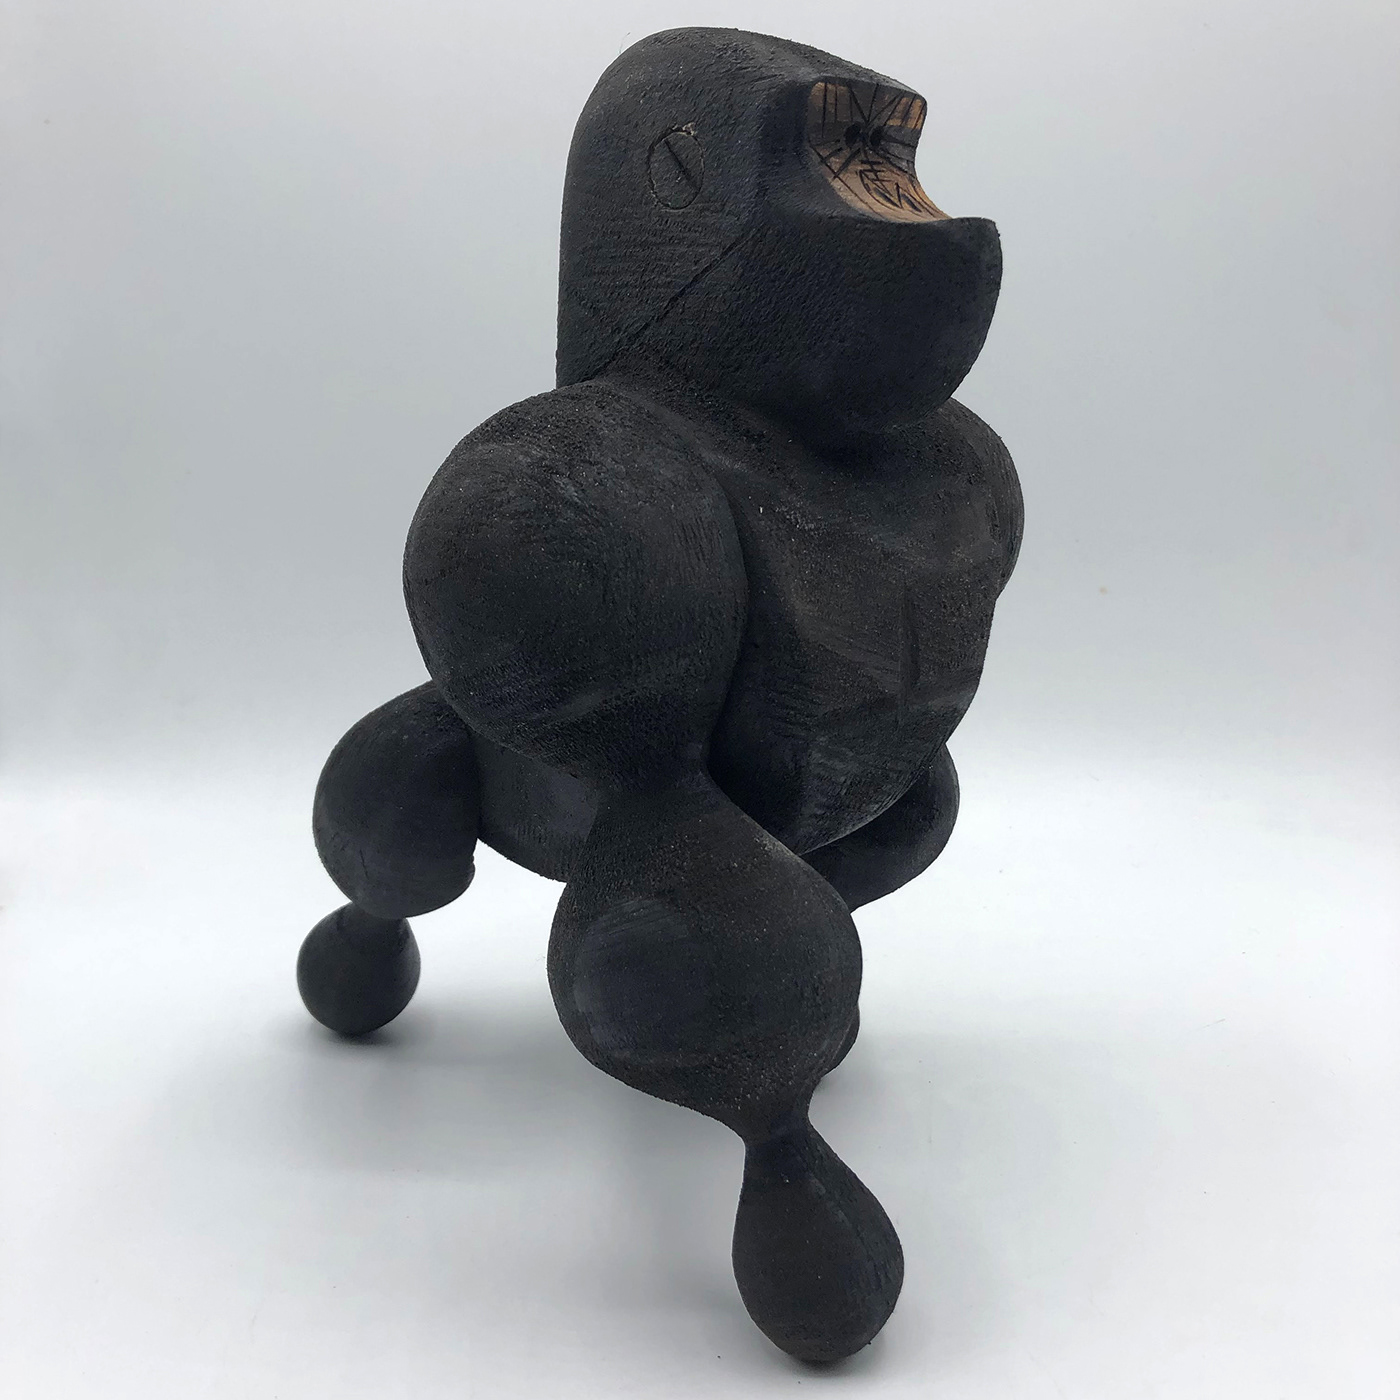 concept concept art conceptual gorilla sculpture wood wood art